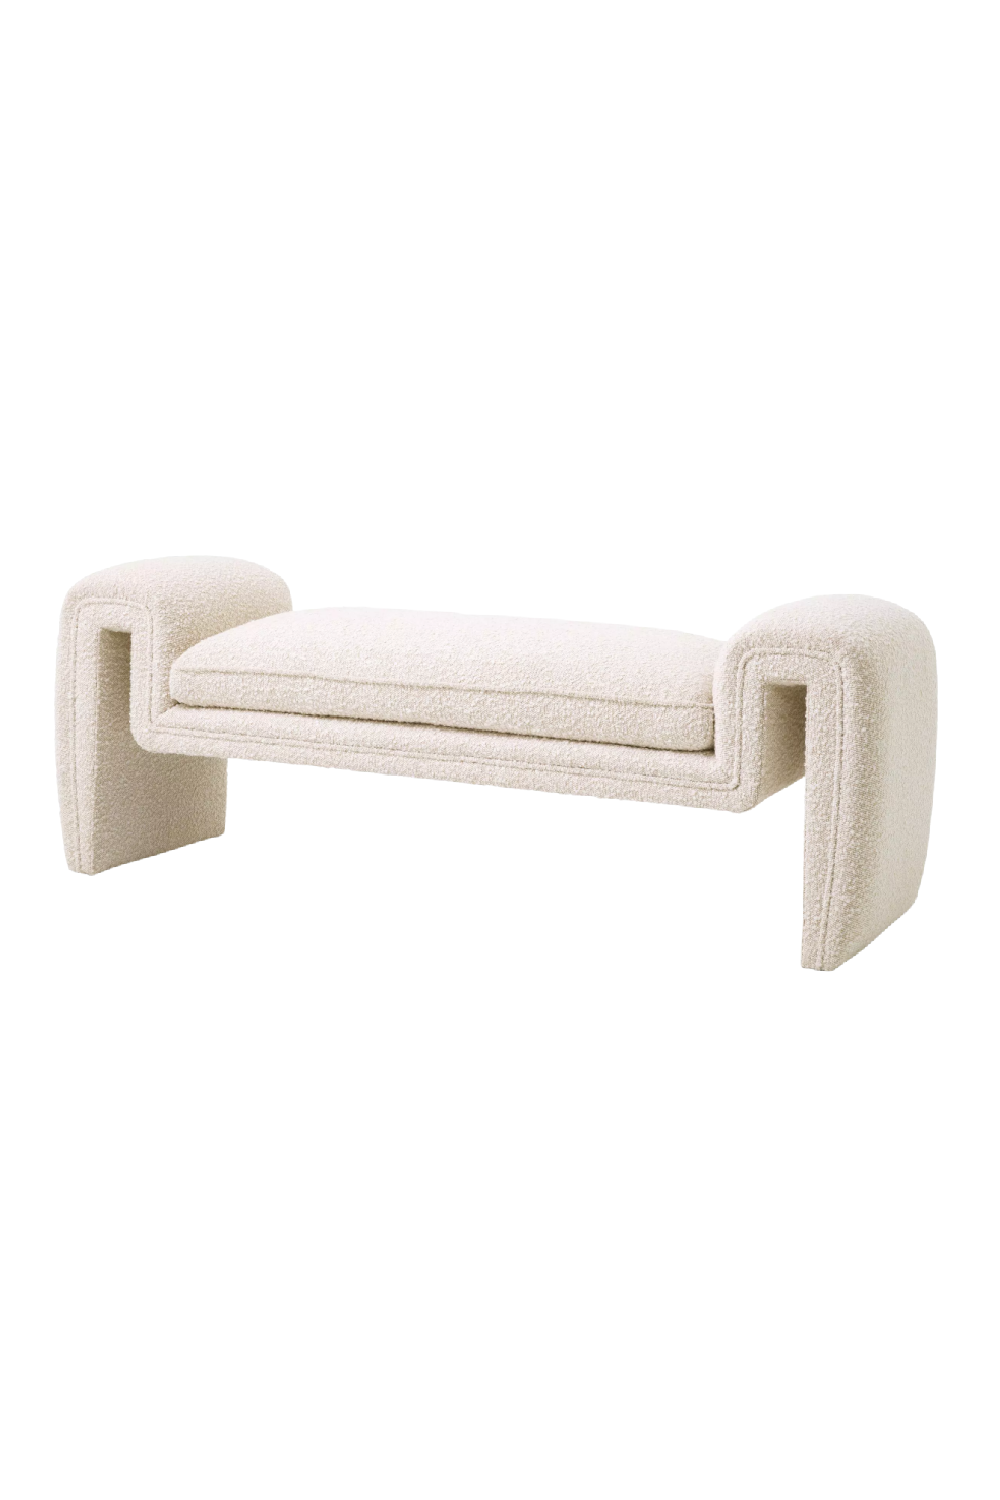 Cream Bouclé Upholstered Bench | Eichholtz Tondo | Oroa.com